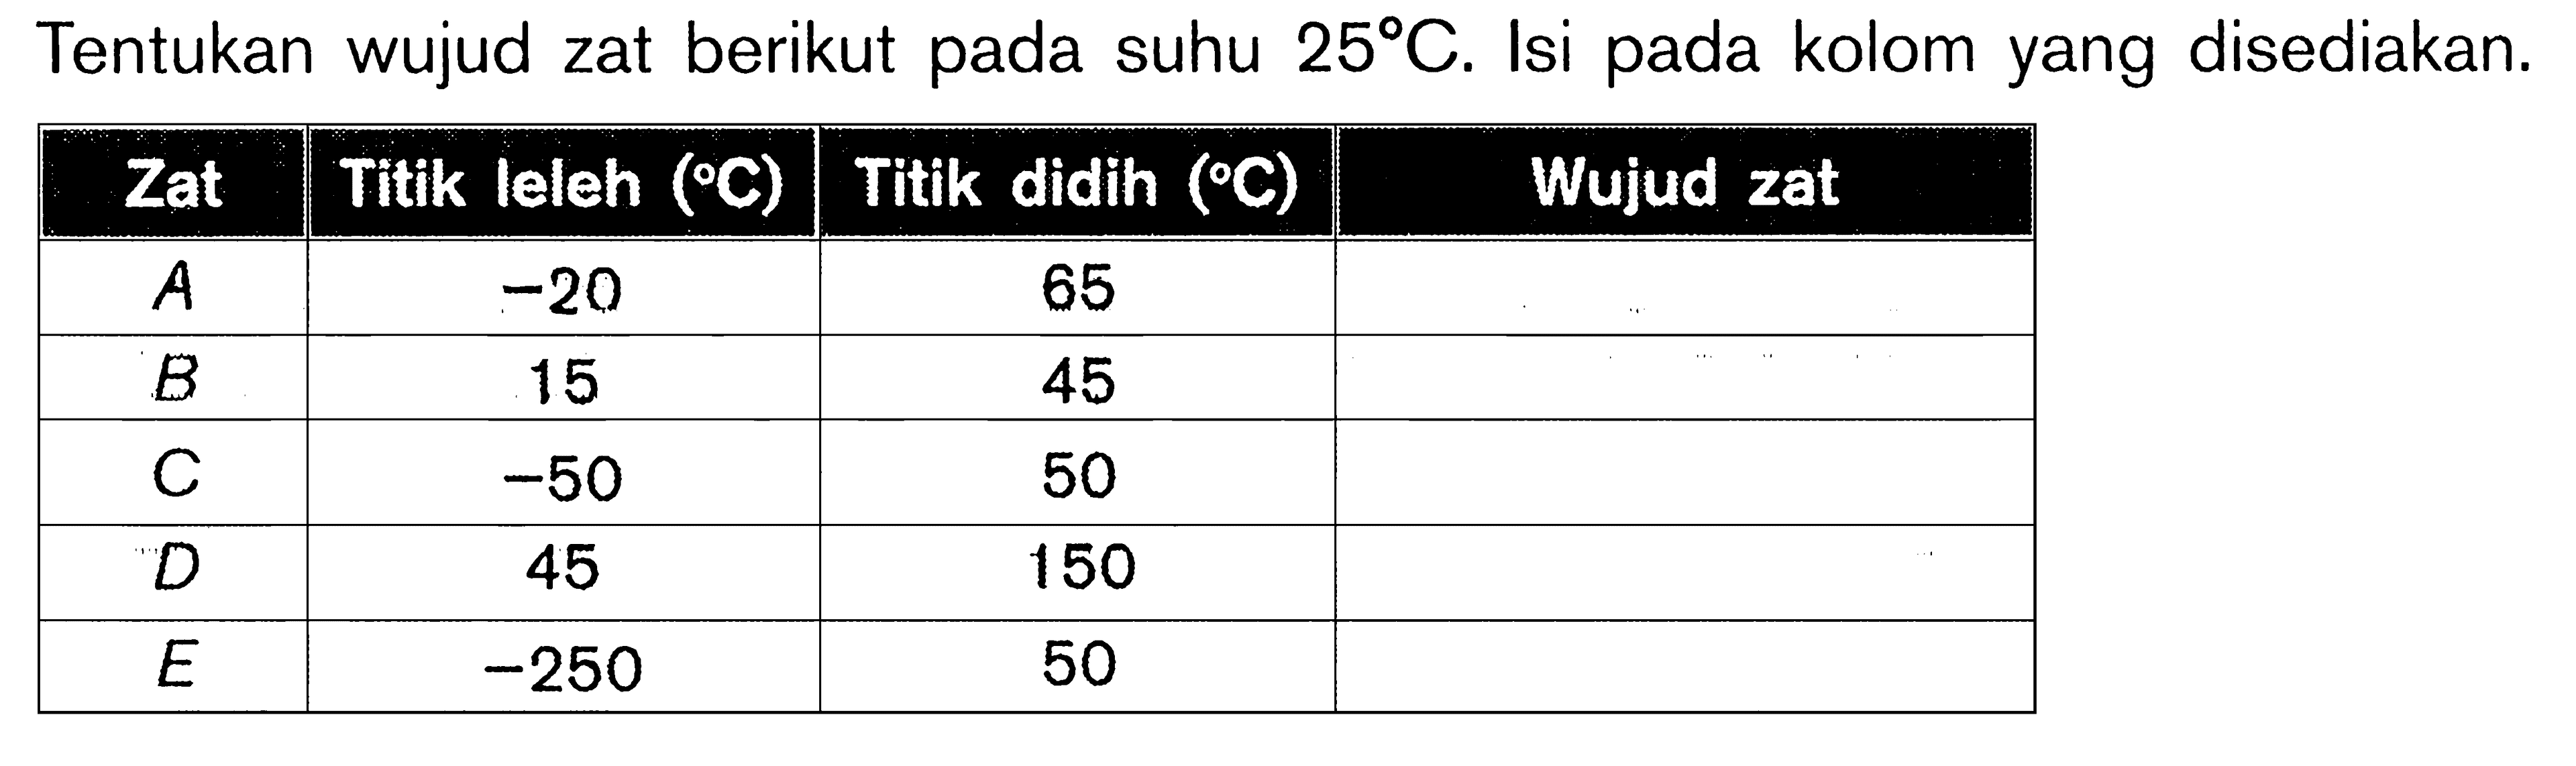 Tentukan wujud zat berikut pada suhu 25 C. Isi pada kolom yang disediakan. Zat Titik leleh (C) Titik didih (C) Wujud zat A -20 65 B 15 45 C -50 50 D 45 150 E -250 50